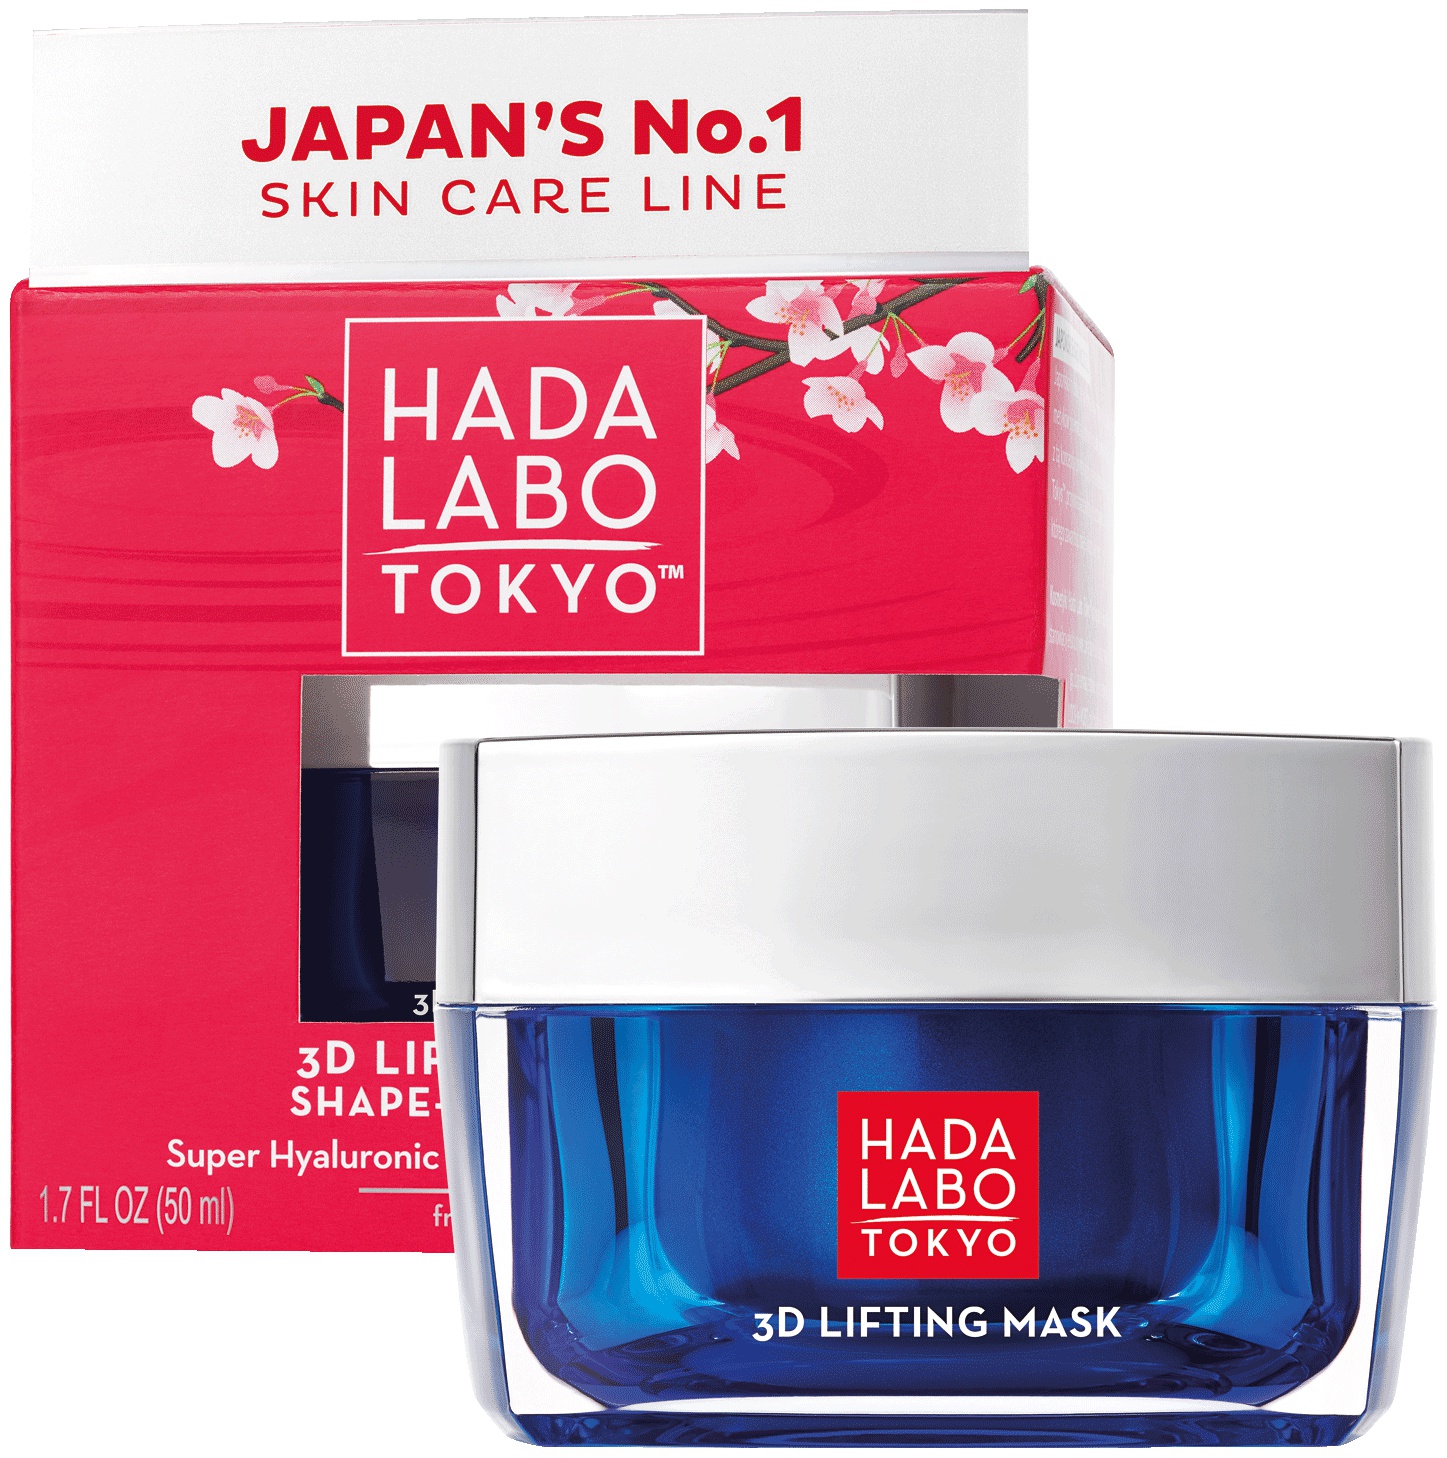 Hada Labo Tokyo 3D Lifting Mask